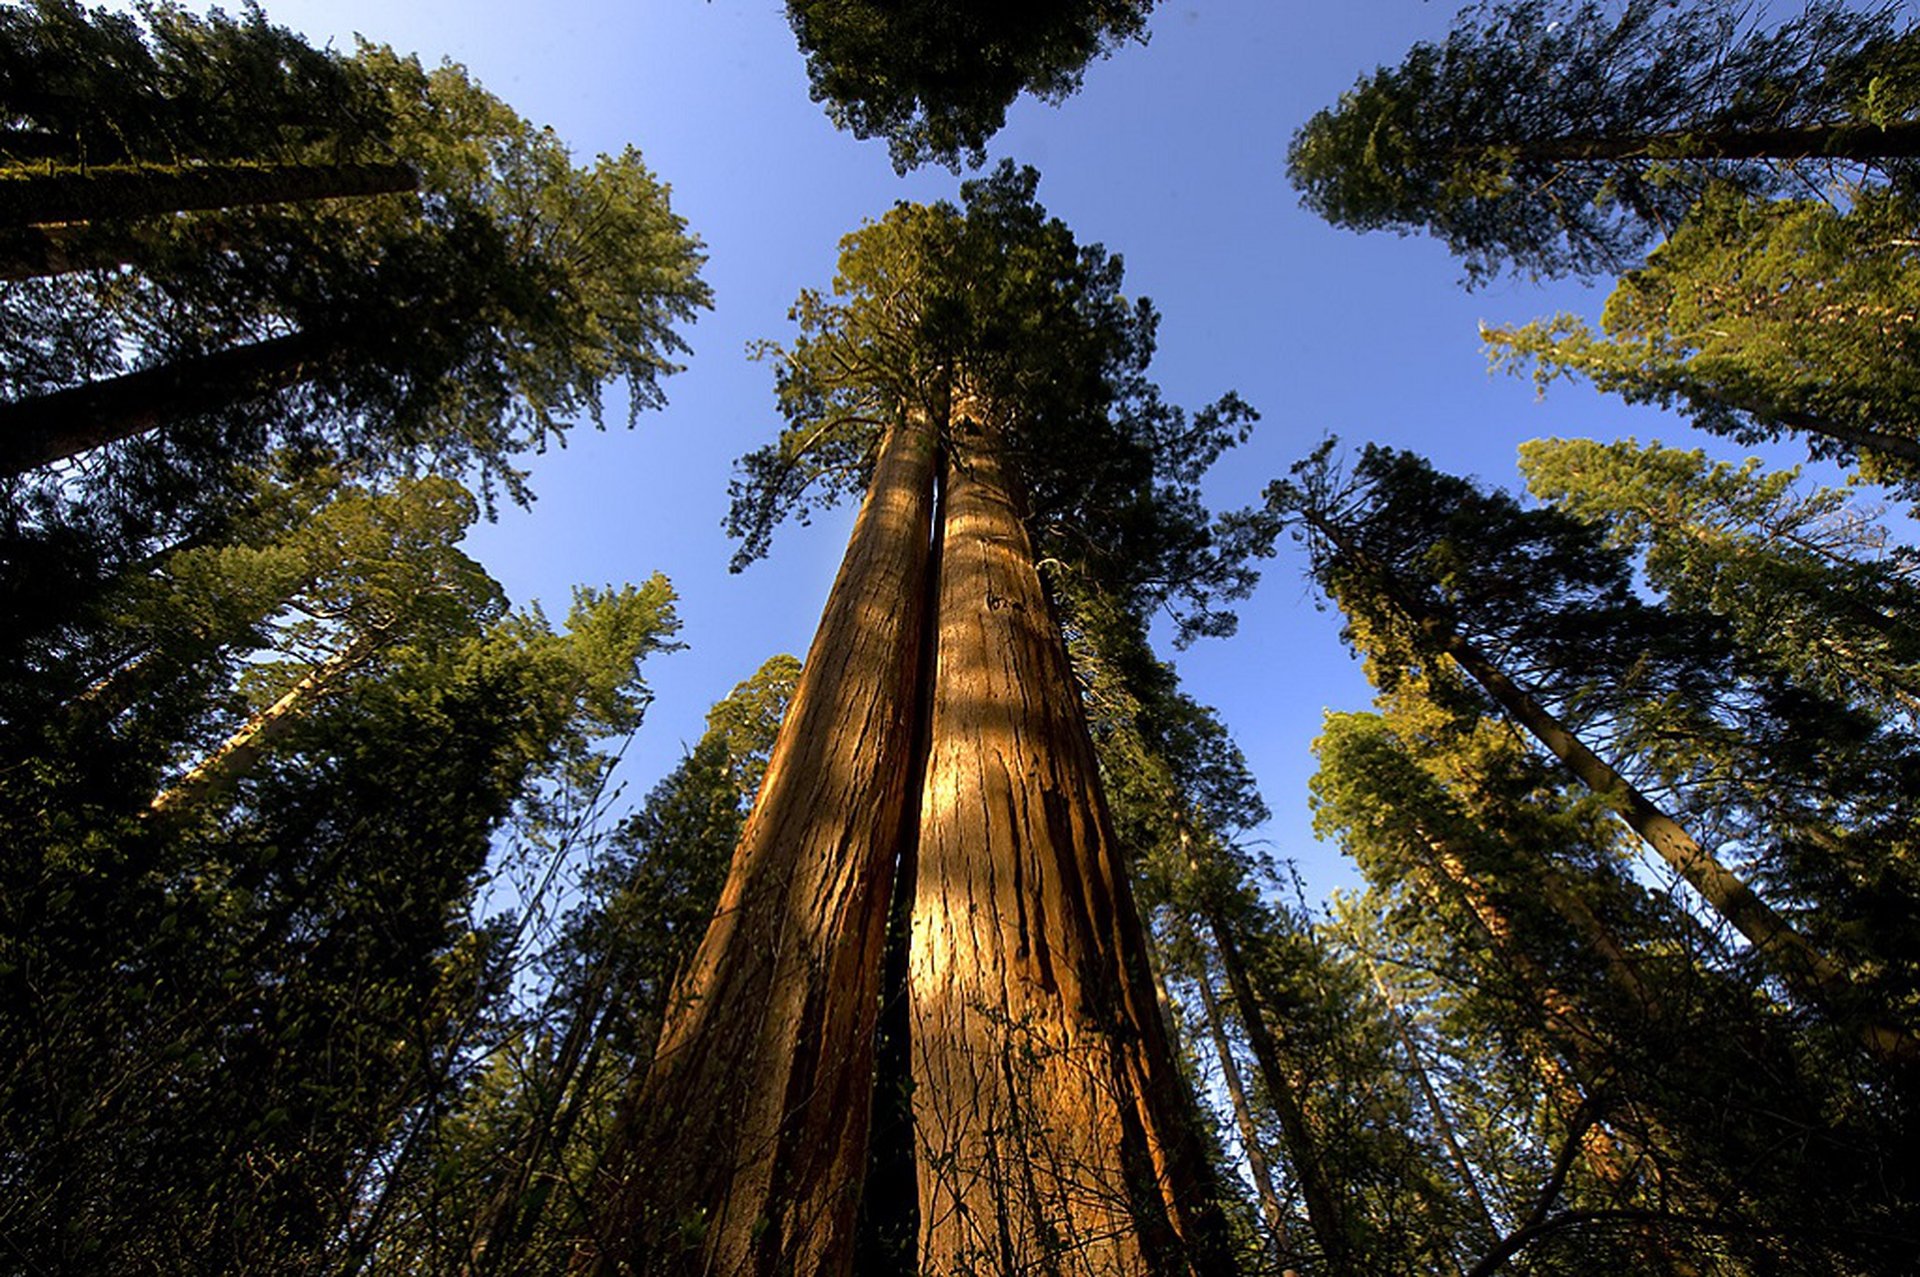 Площадь самого большого леса в мире. Секвойя дерево. Секвойя вечнозеленая дерево. Калифорнийская Секвойя Гиперион. Секвойя Мамонтово дерево.